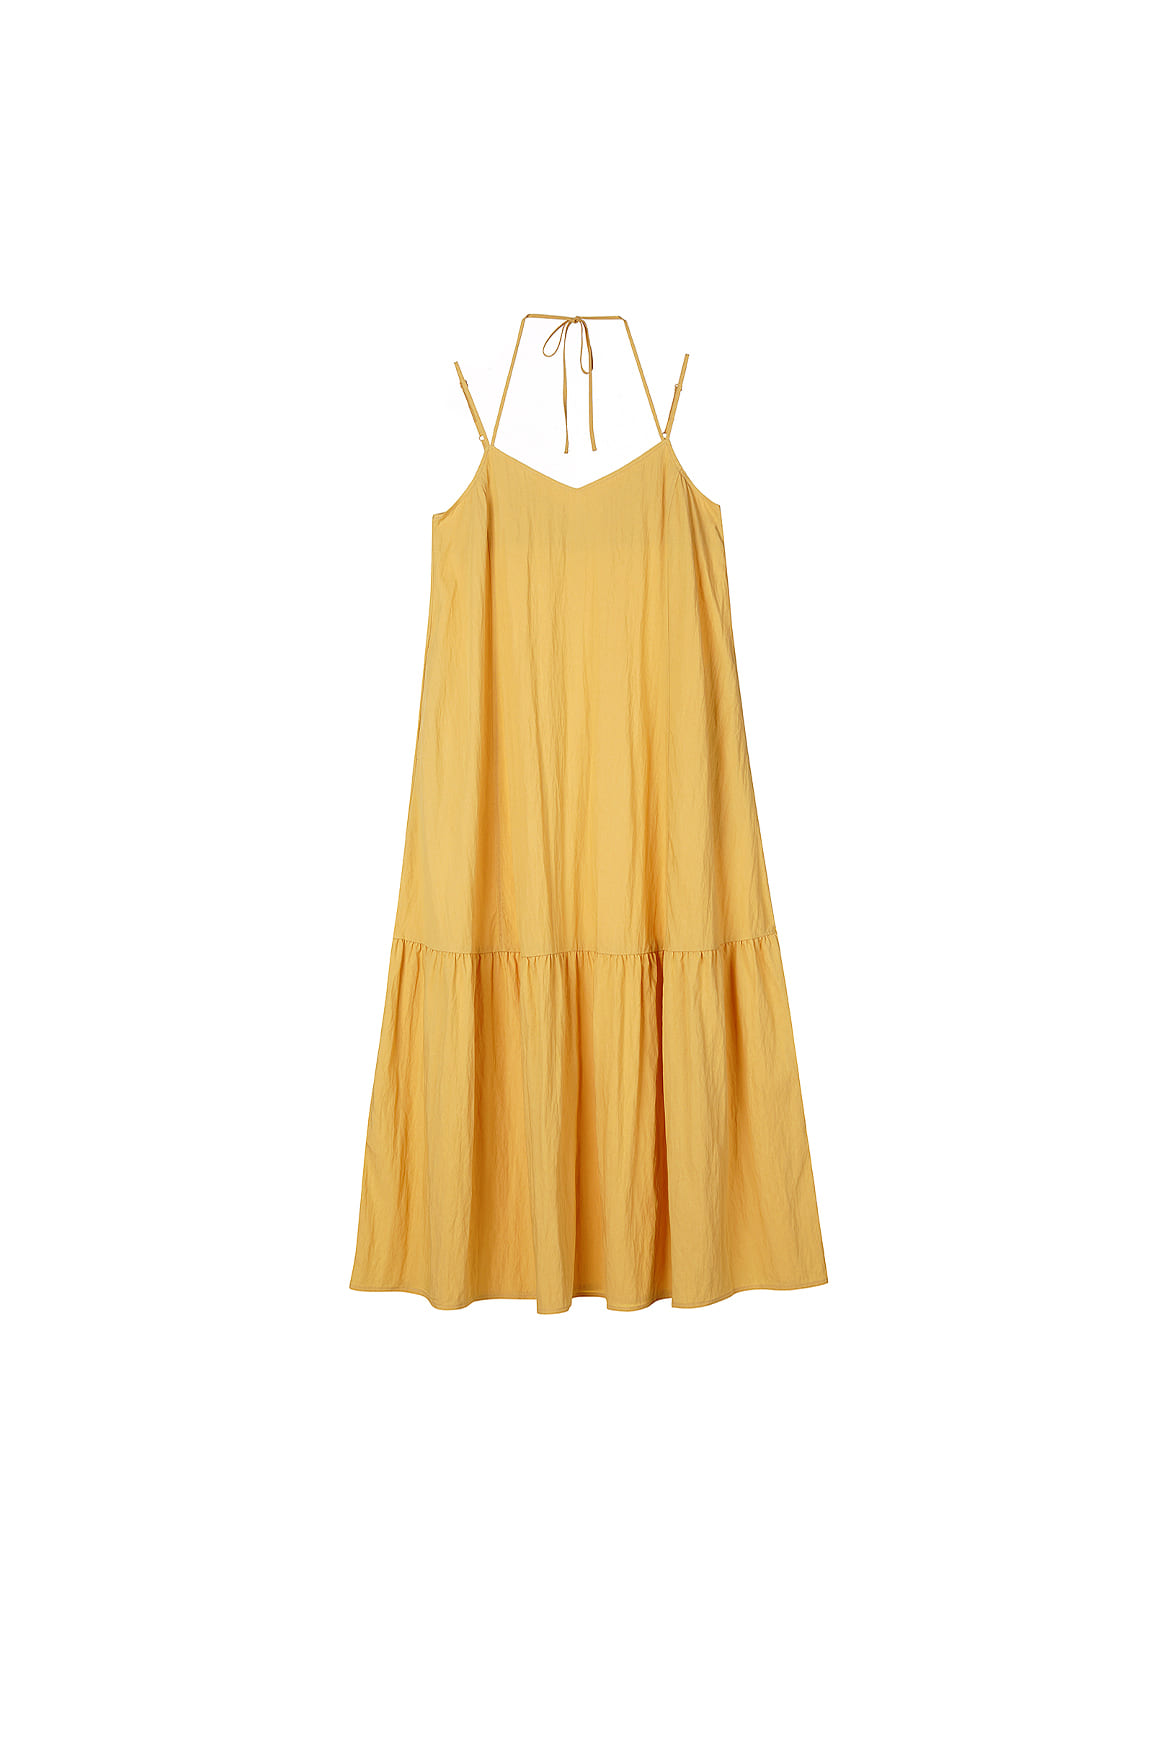 [샘플] Double String Summer Dress_Cream Gold